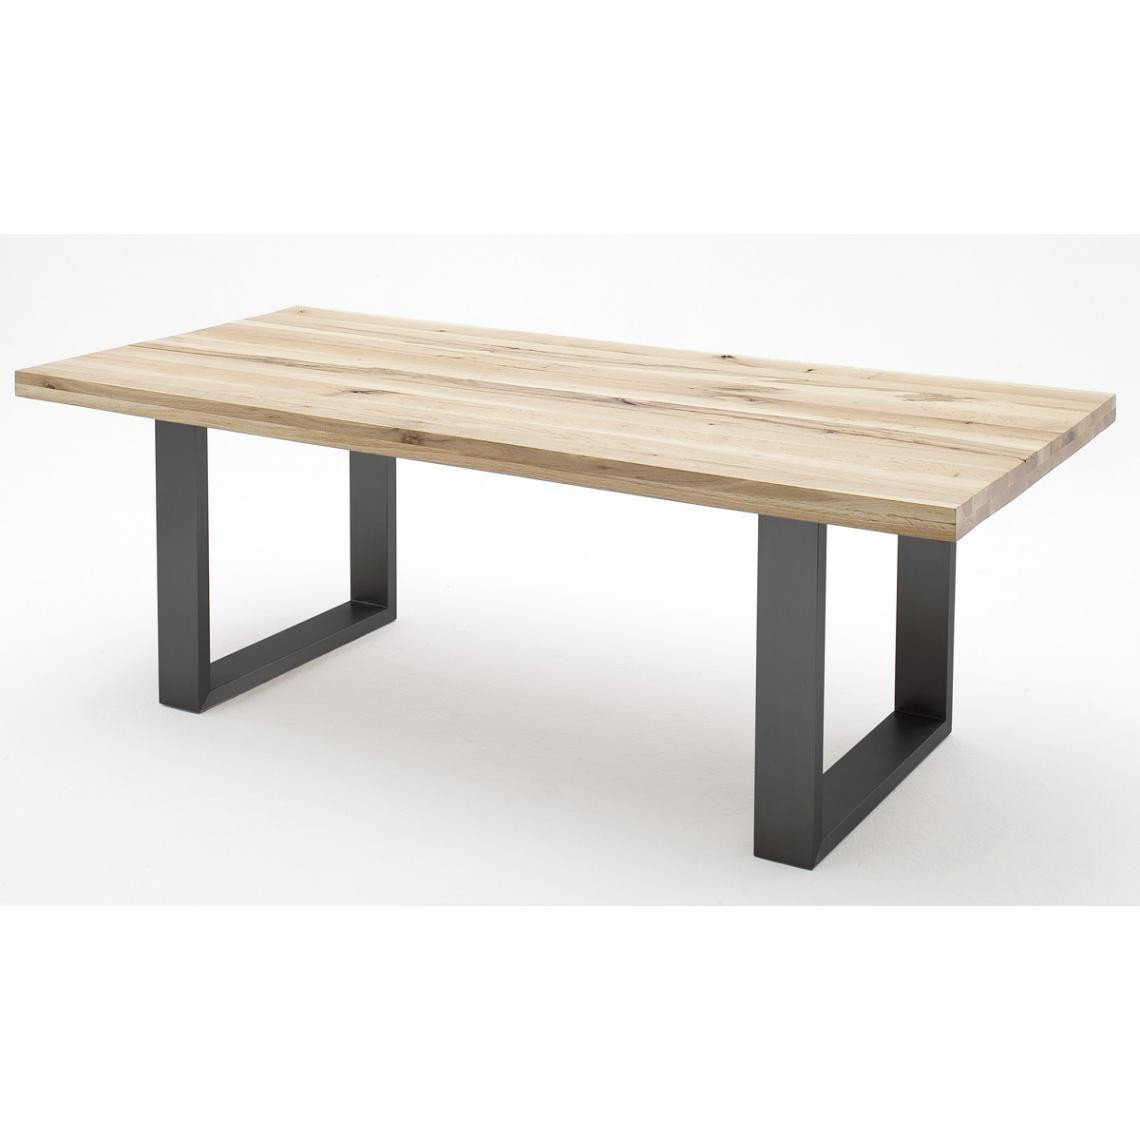 Pegane - Table à manger en chêne sauvage massif/anthracite - L.200 x H.76 x P.100 cm - Tables à manger